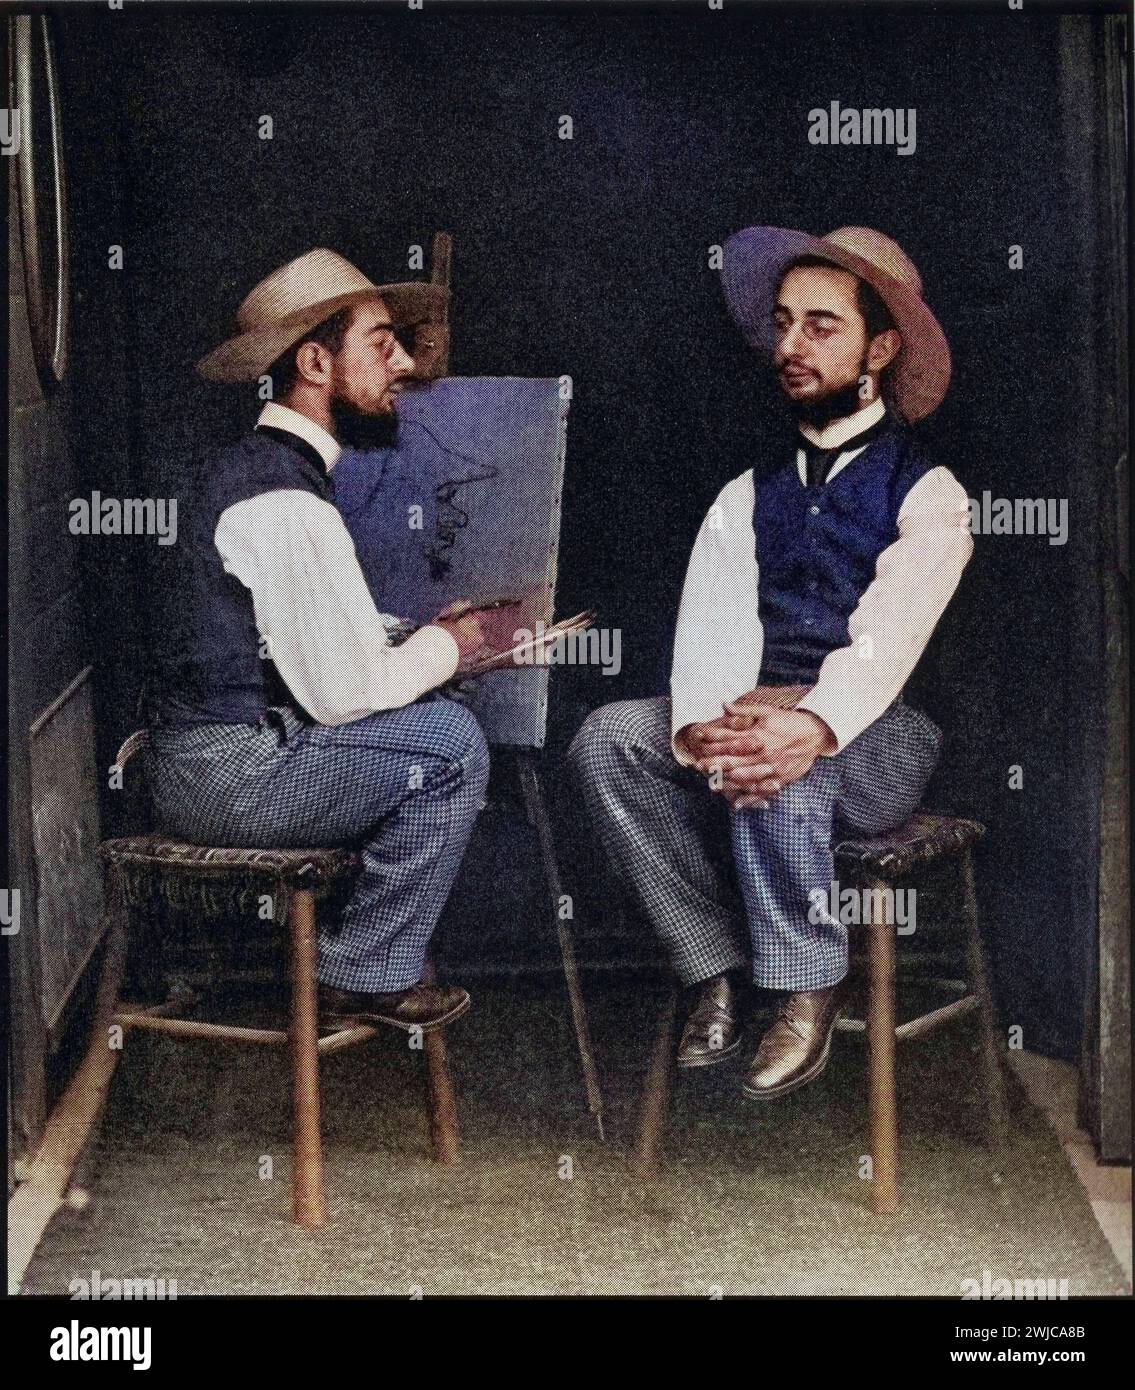 Lautrec nach einer Doppelfotografie von Henri Marie, Raymond de Toulouse-Lautrec Monfa 1864-1901 Französischer Maler, Grafiker, Zeichner und Illustrat Foto Stock